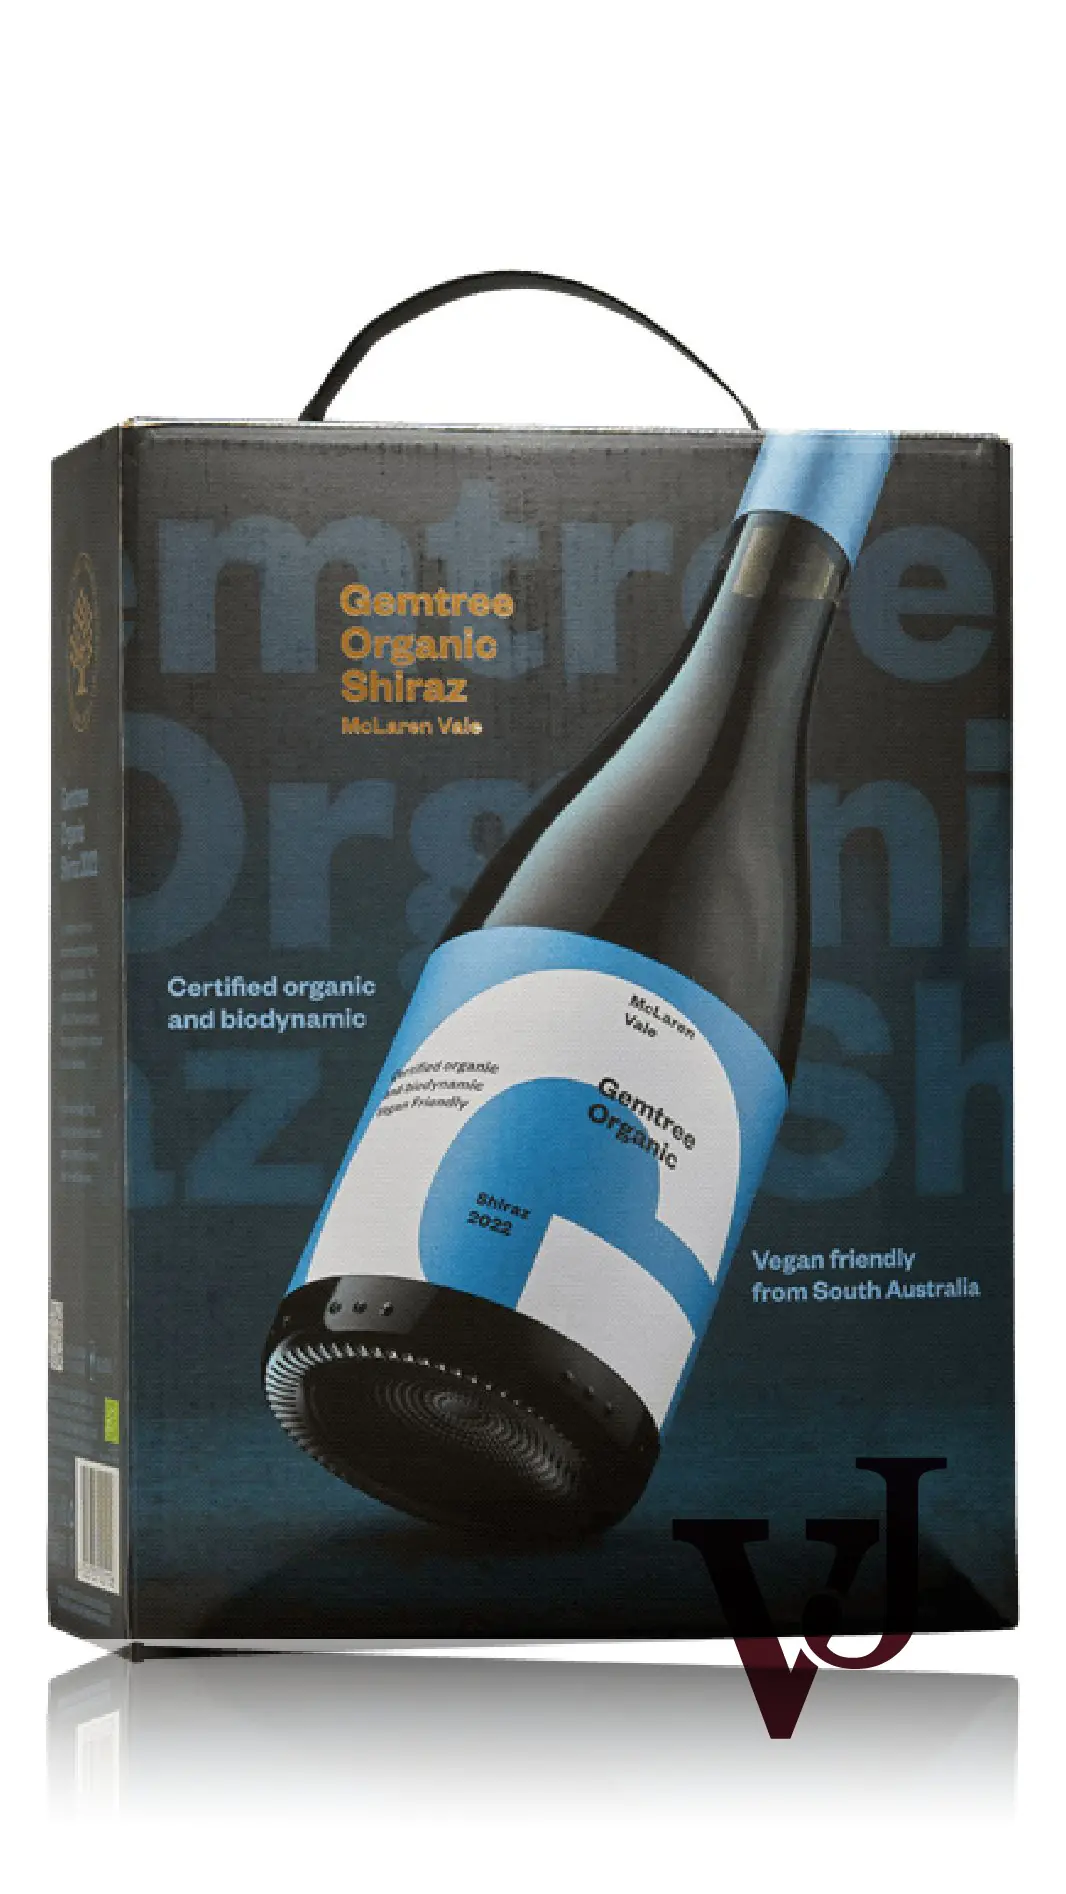 Rött Vin - Gemtree Organic Shiraz 2022 artikel nummer 278508 från producenten Gemtree Vineyards från Australien - Vinjournalen.se